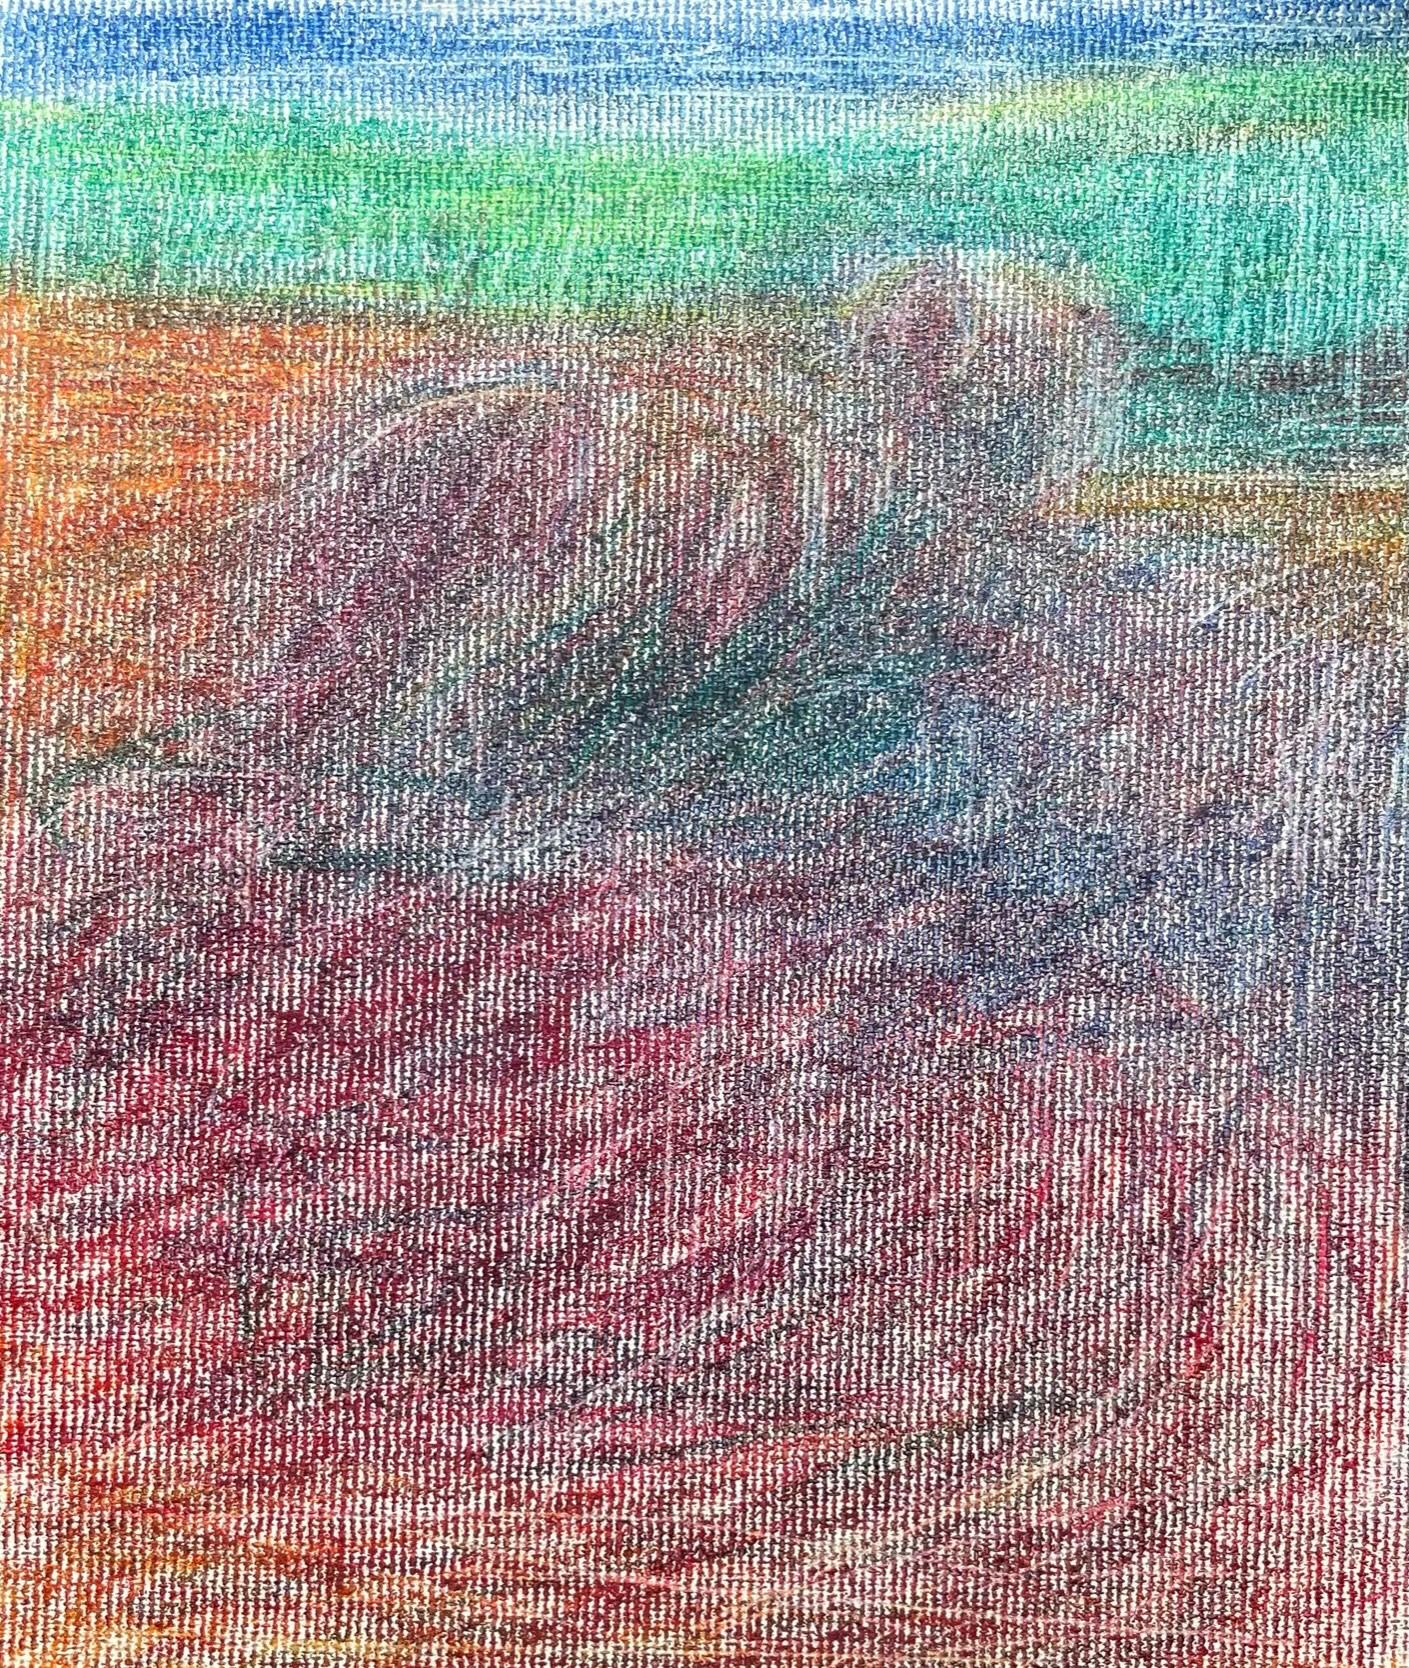 Body in the Field #9 – Landschaft, Orange, Rot, Buntstift  – Art von Zsolt Berszán